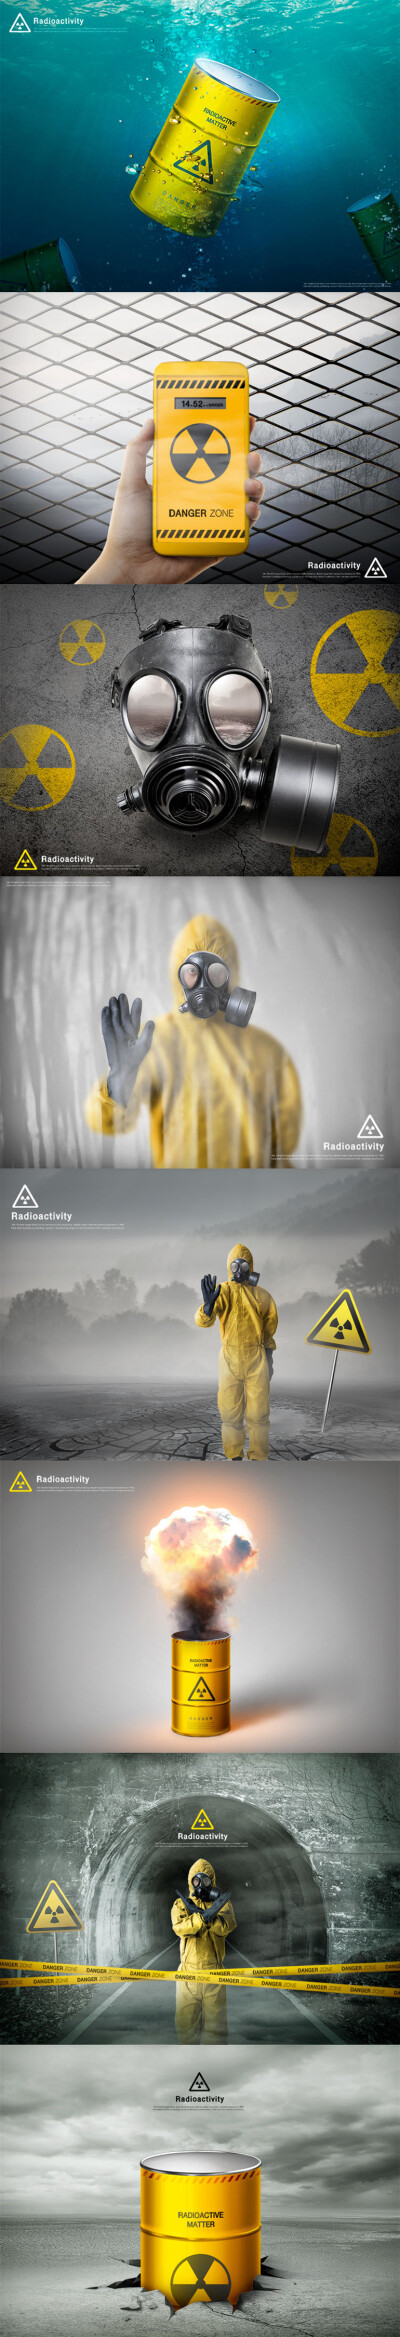 化学气体放射性物质人体防护环境污染公益环保海报设计素材